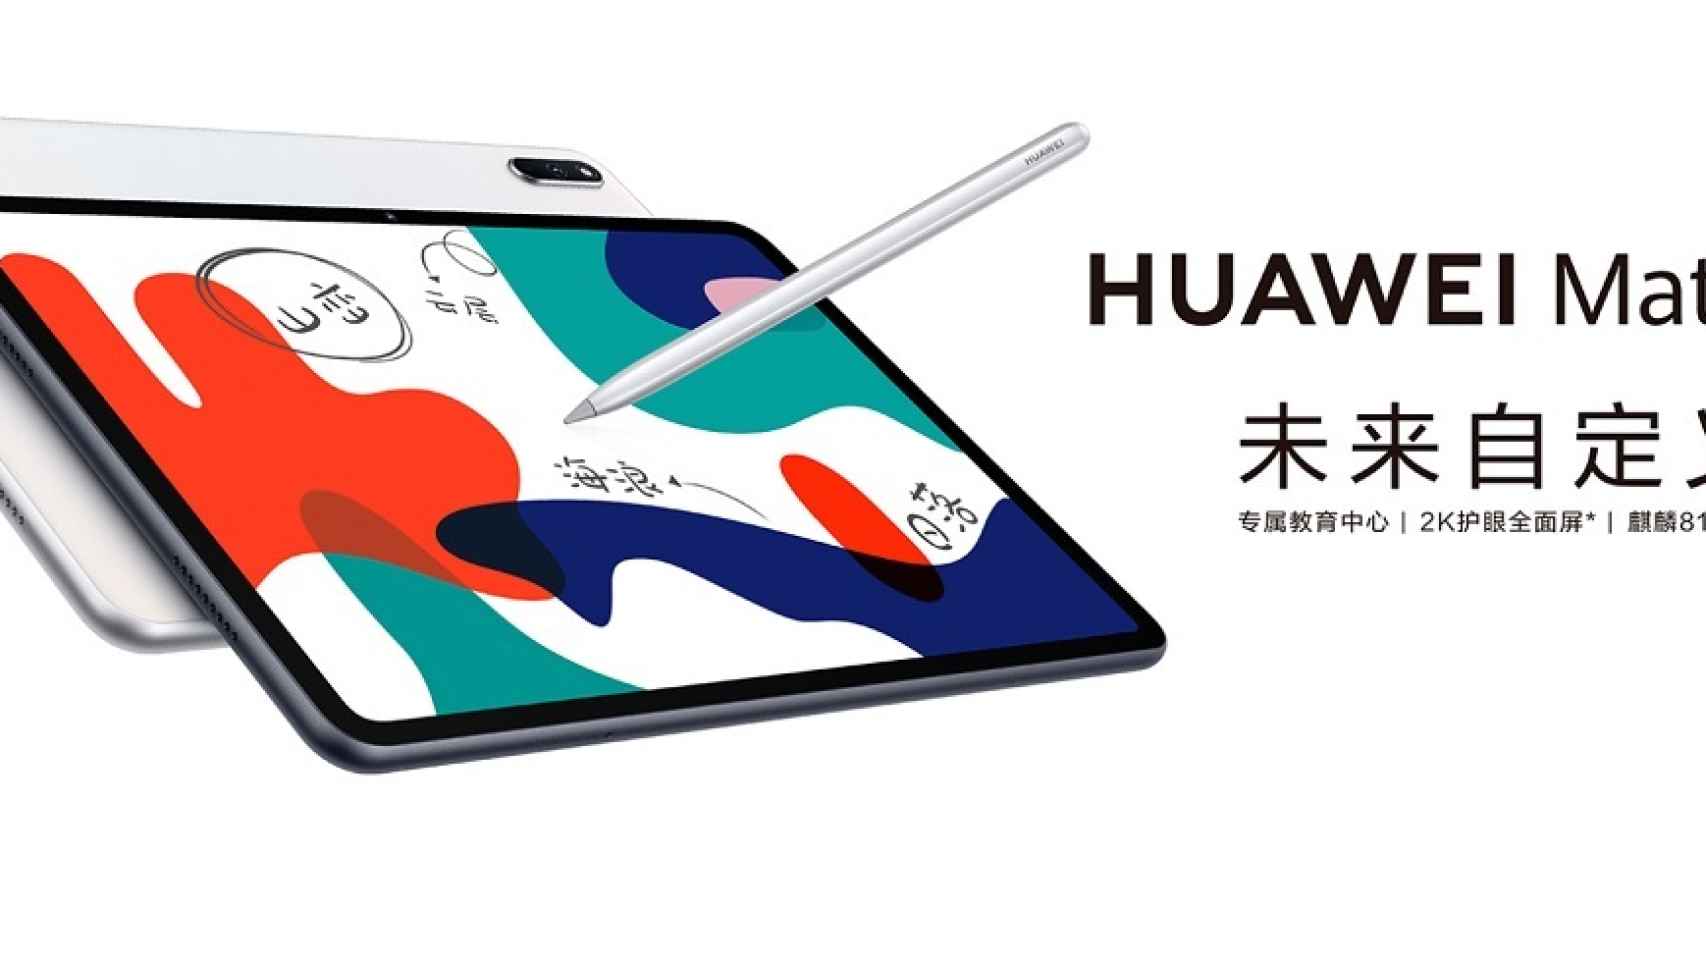 Nueva Huawei MatePad 10.4: pantalla grande, batería enorme y precio ajustado